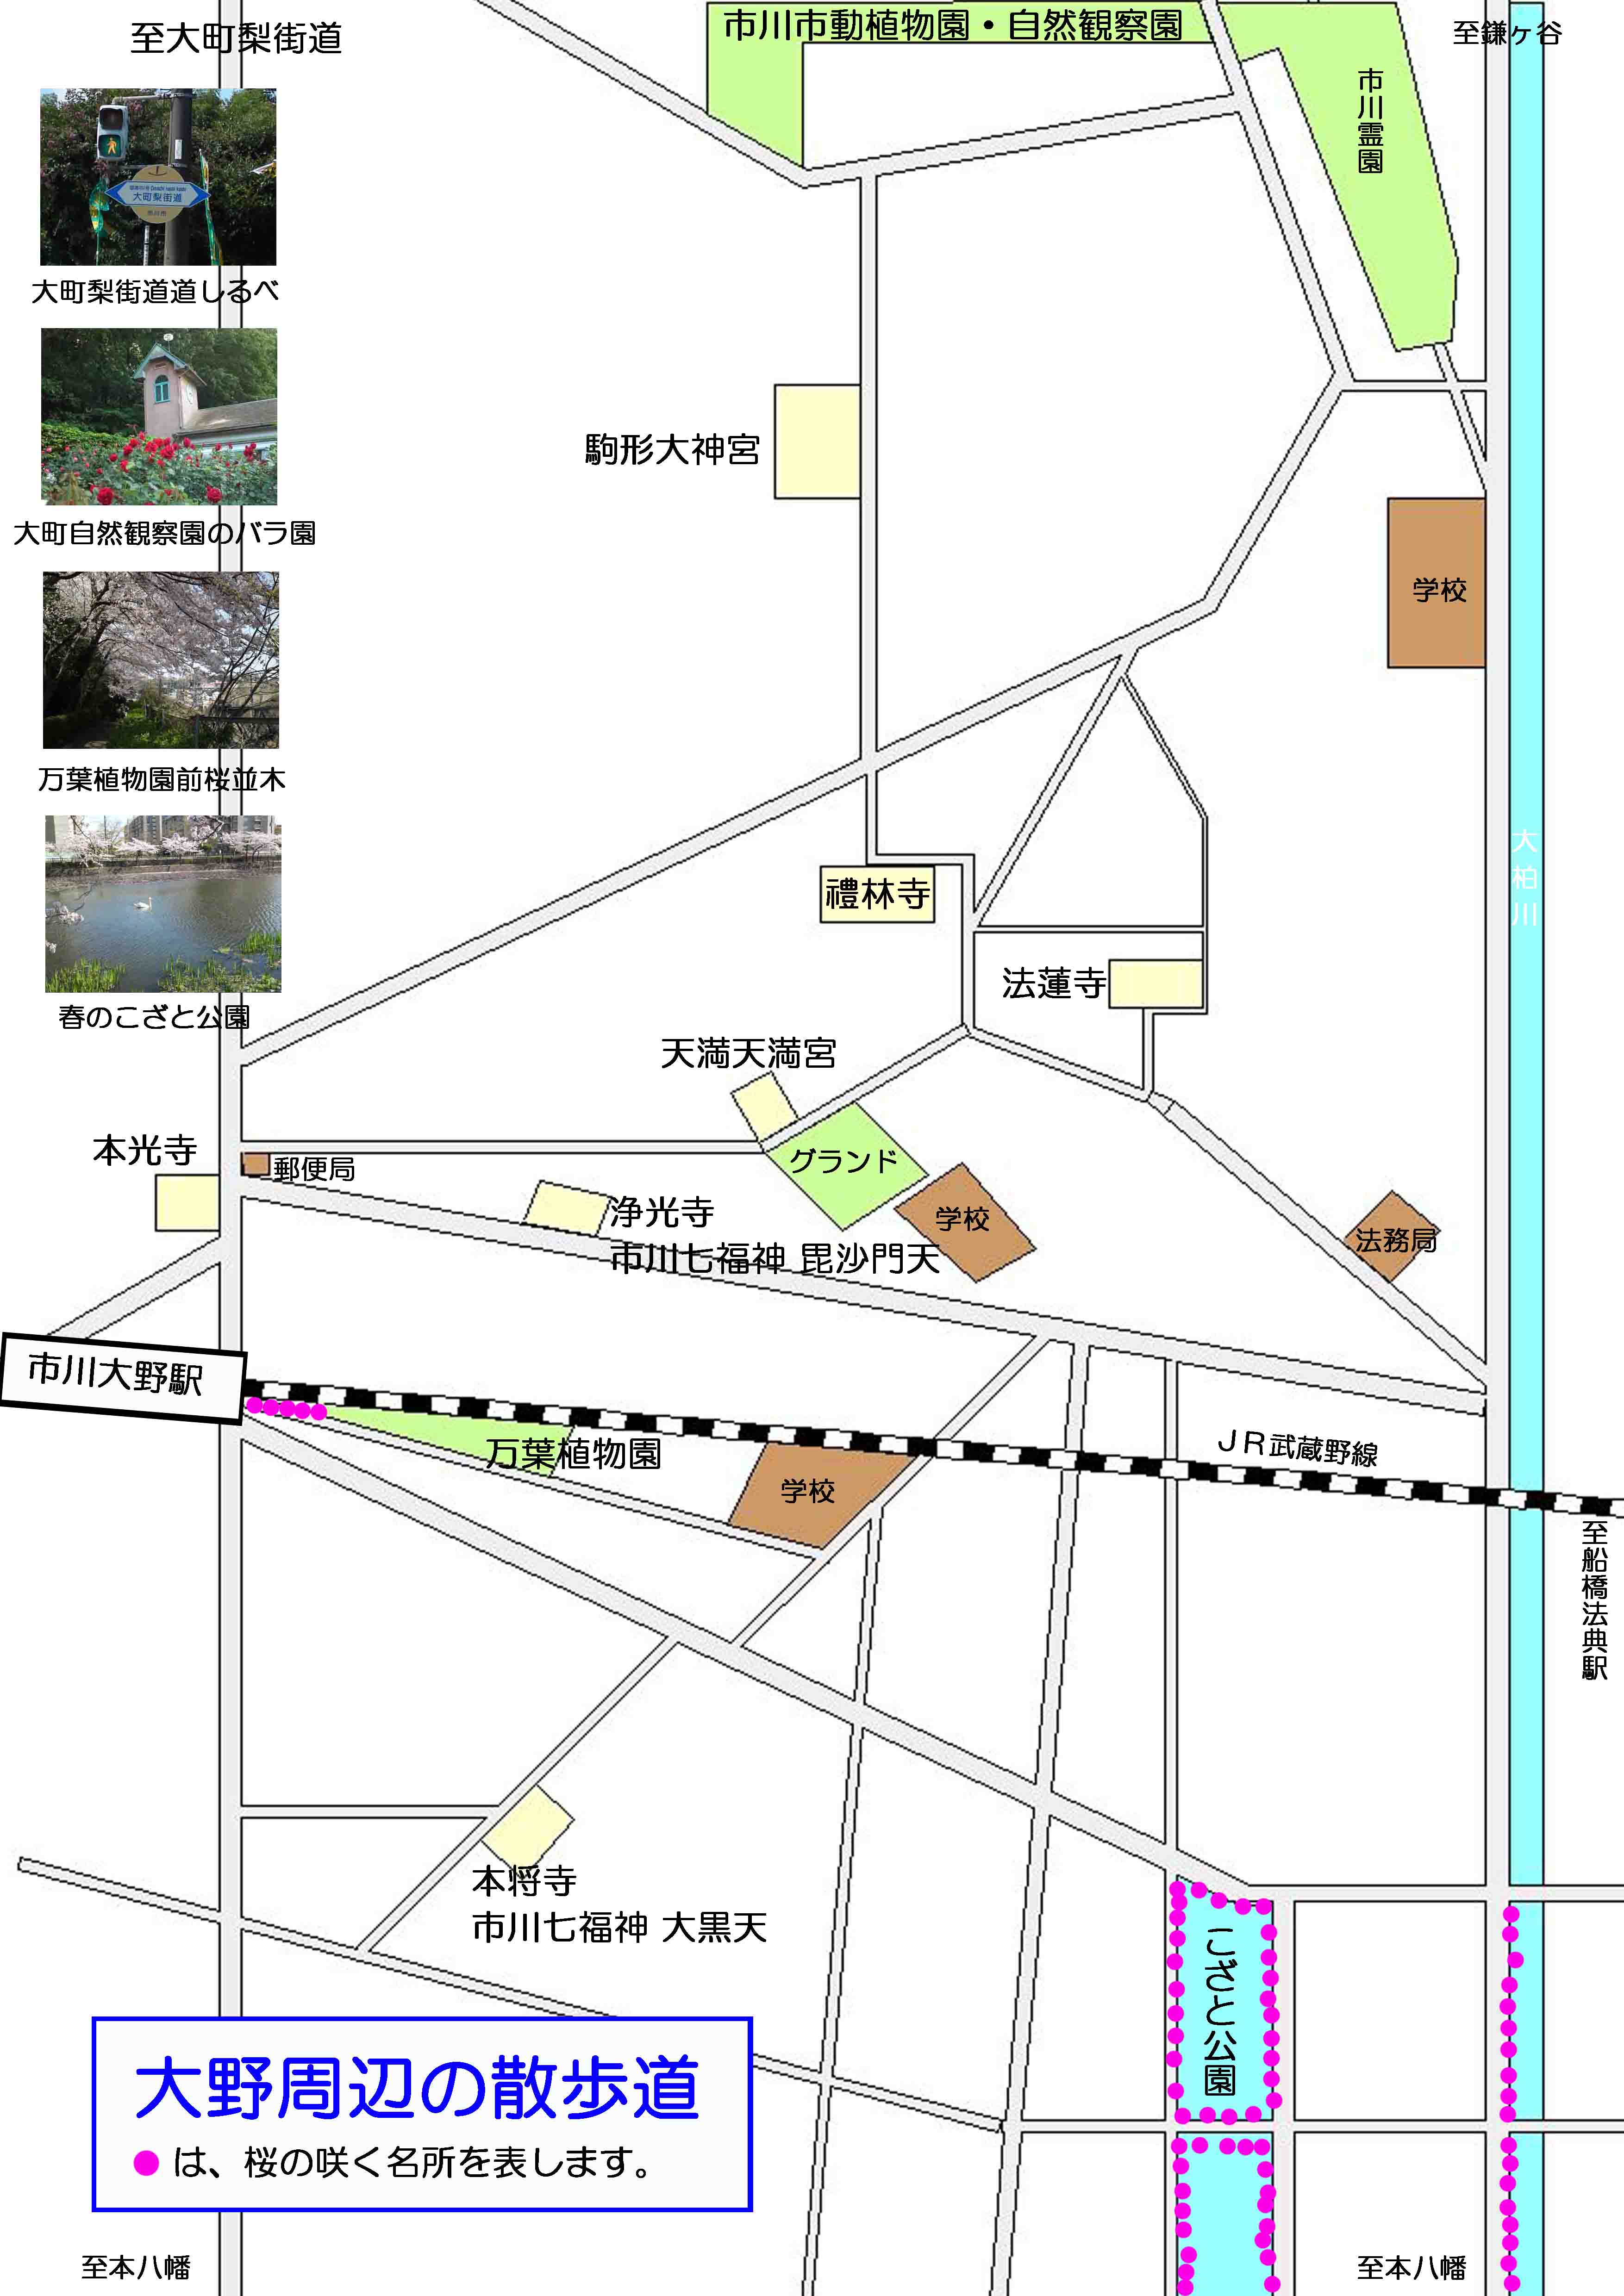 こざと公園と市川大野駅周辺の案内図